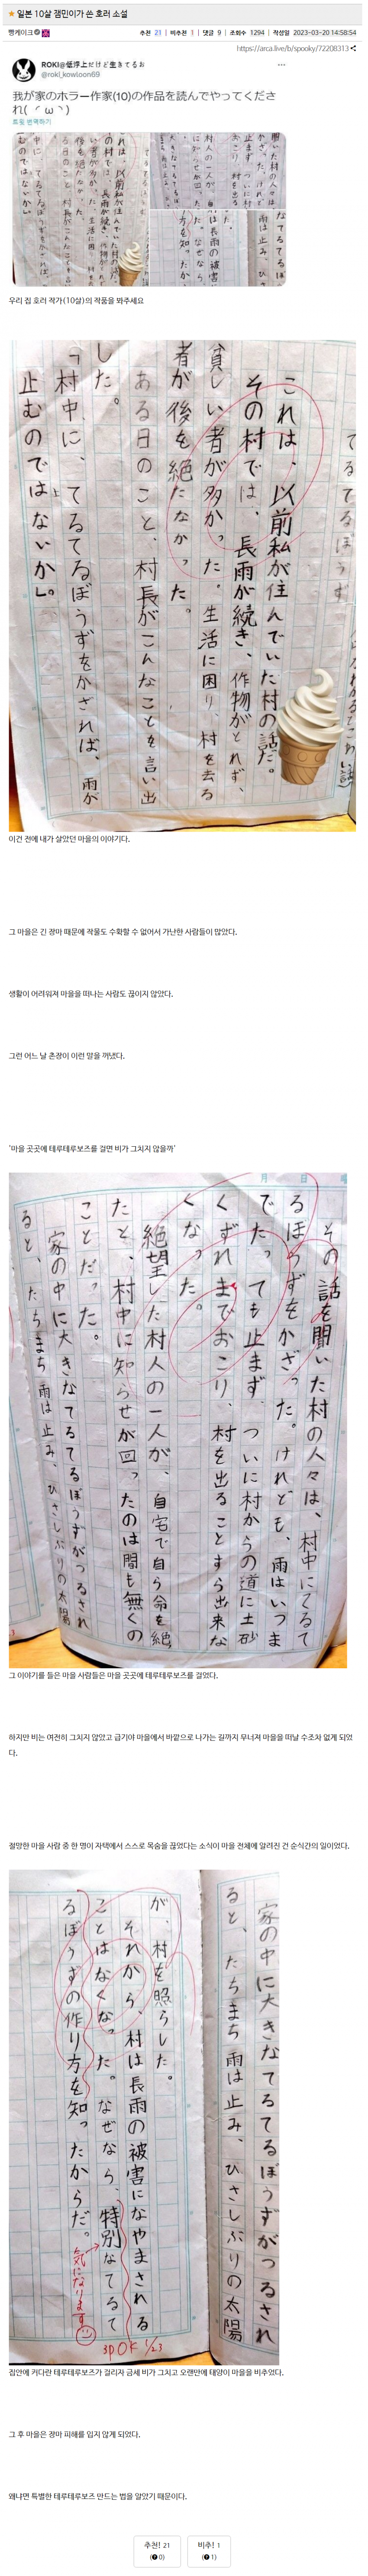 일본 10살 잼민이가 쓴 공포소설